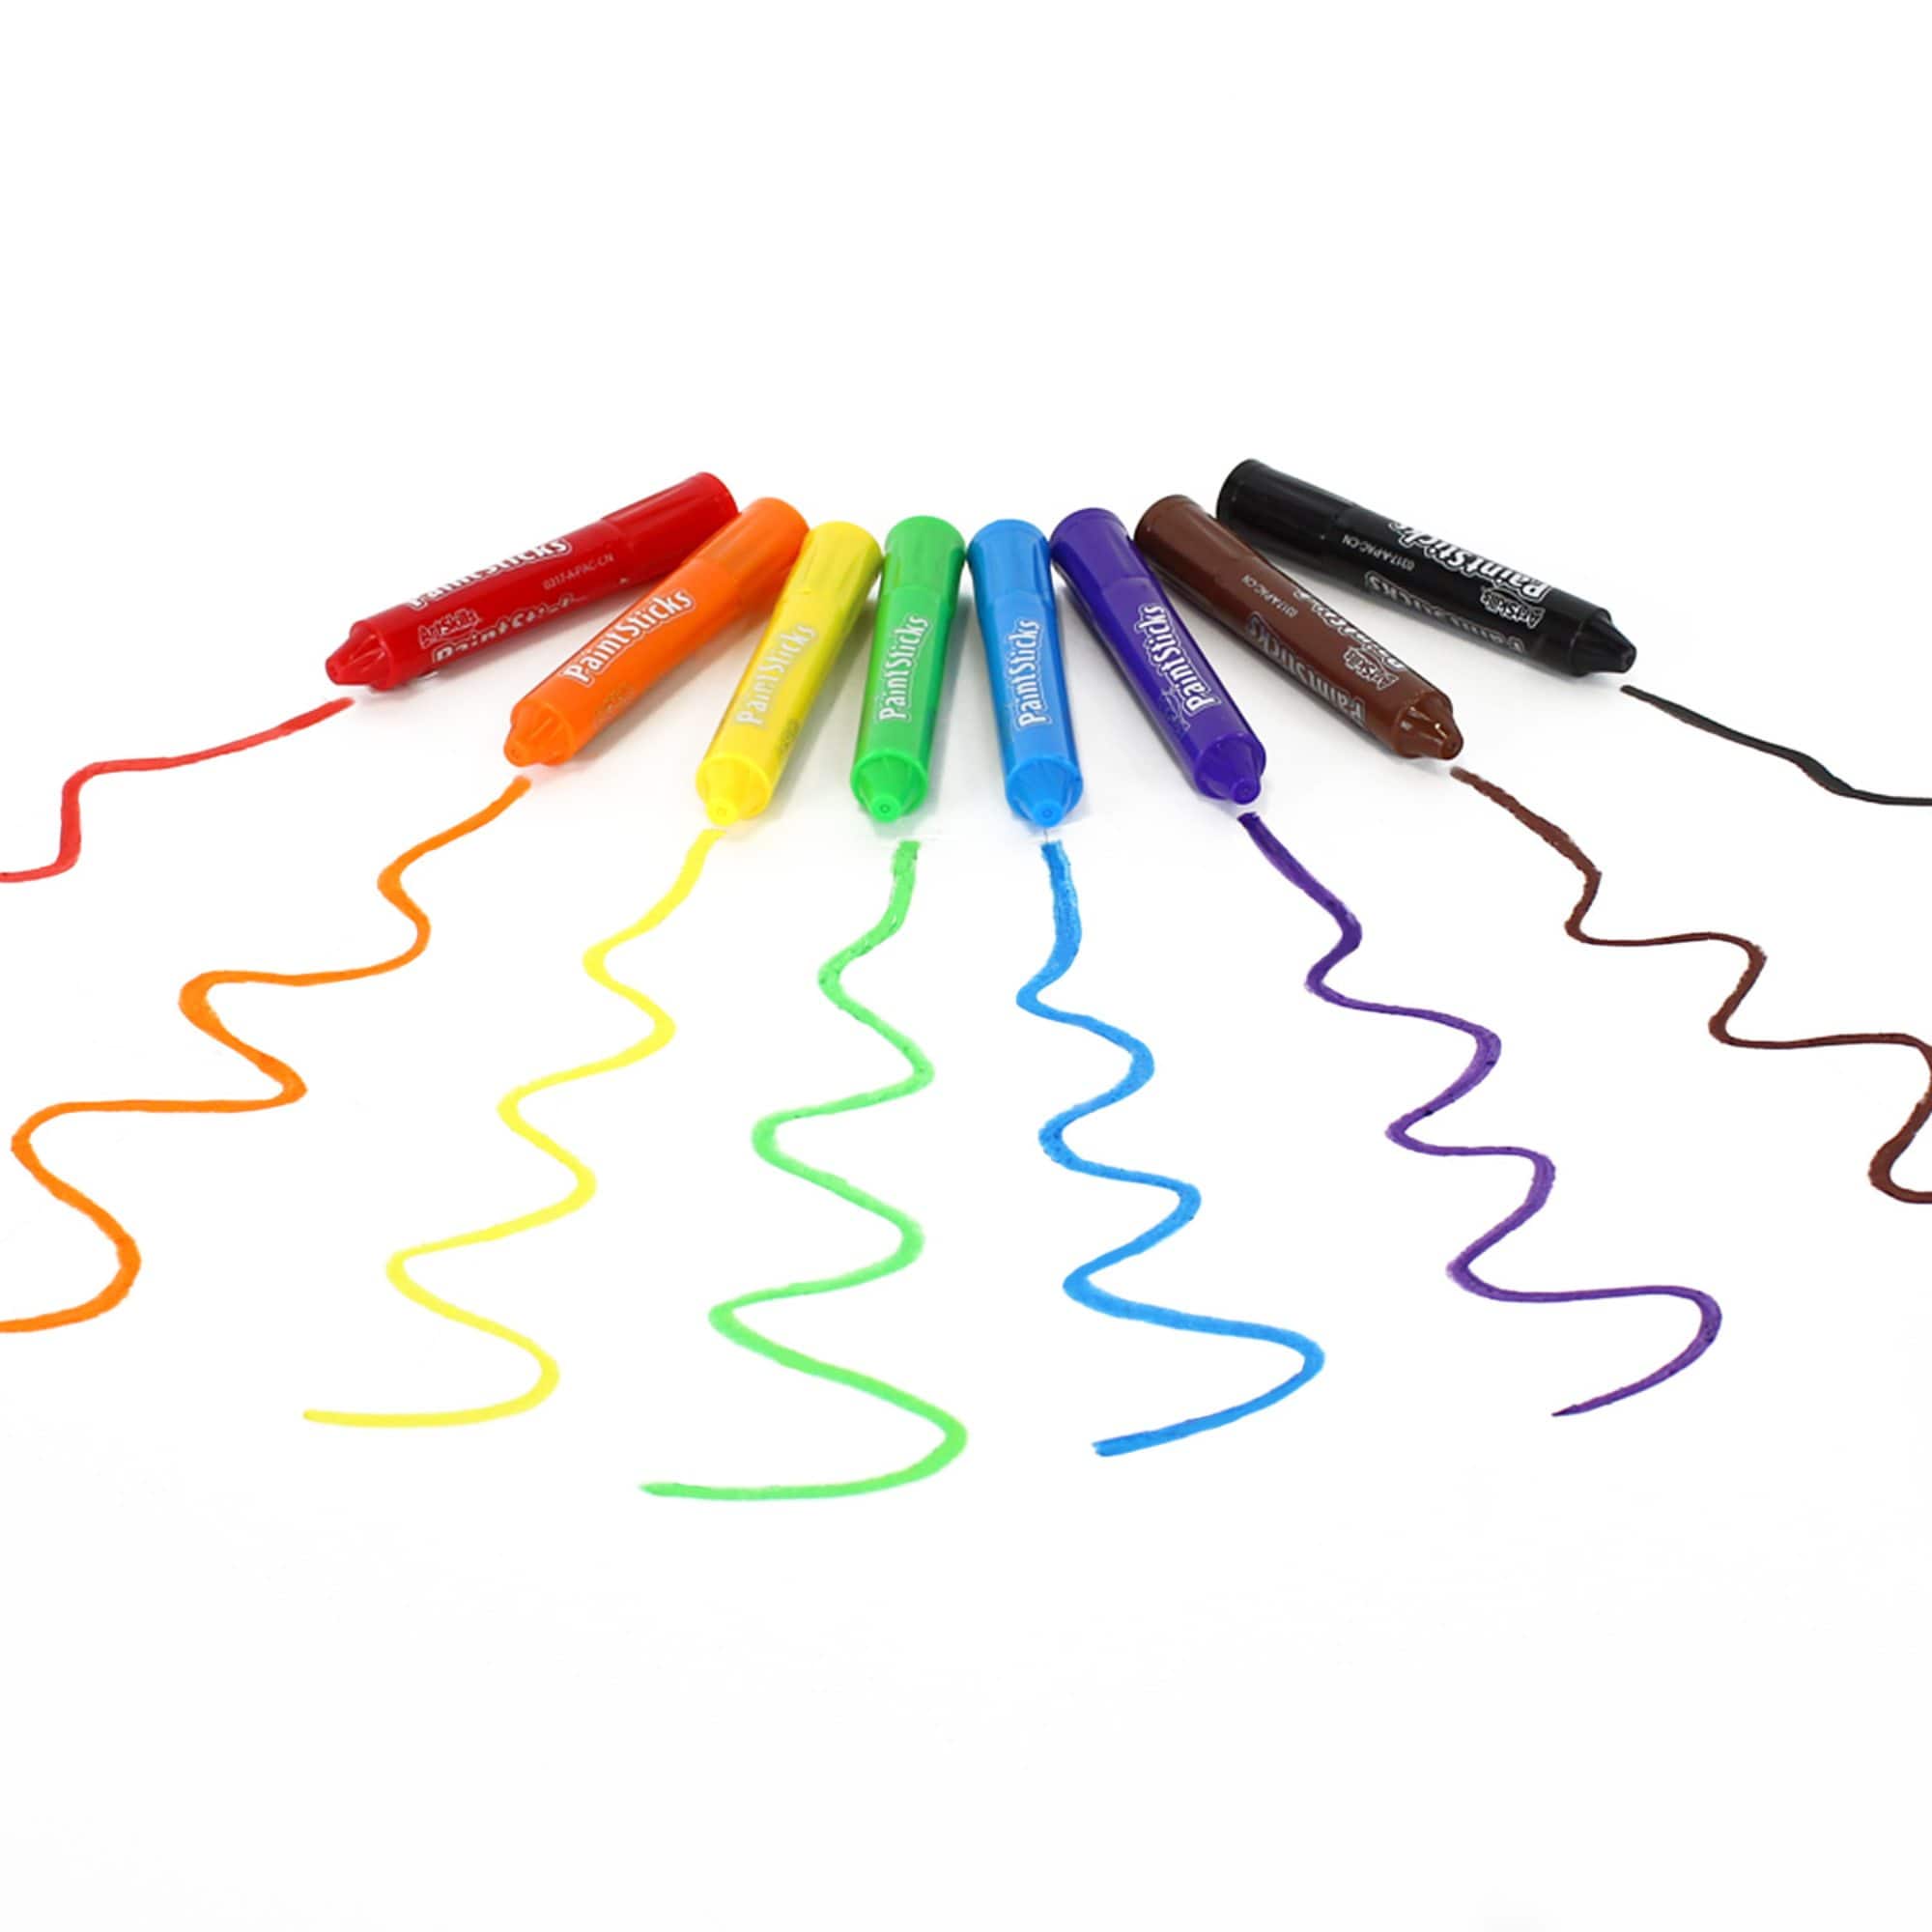 ArtSkills&#xAE; 8 Color Washable Paint Sticks